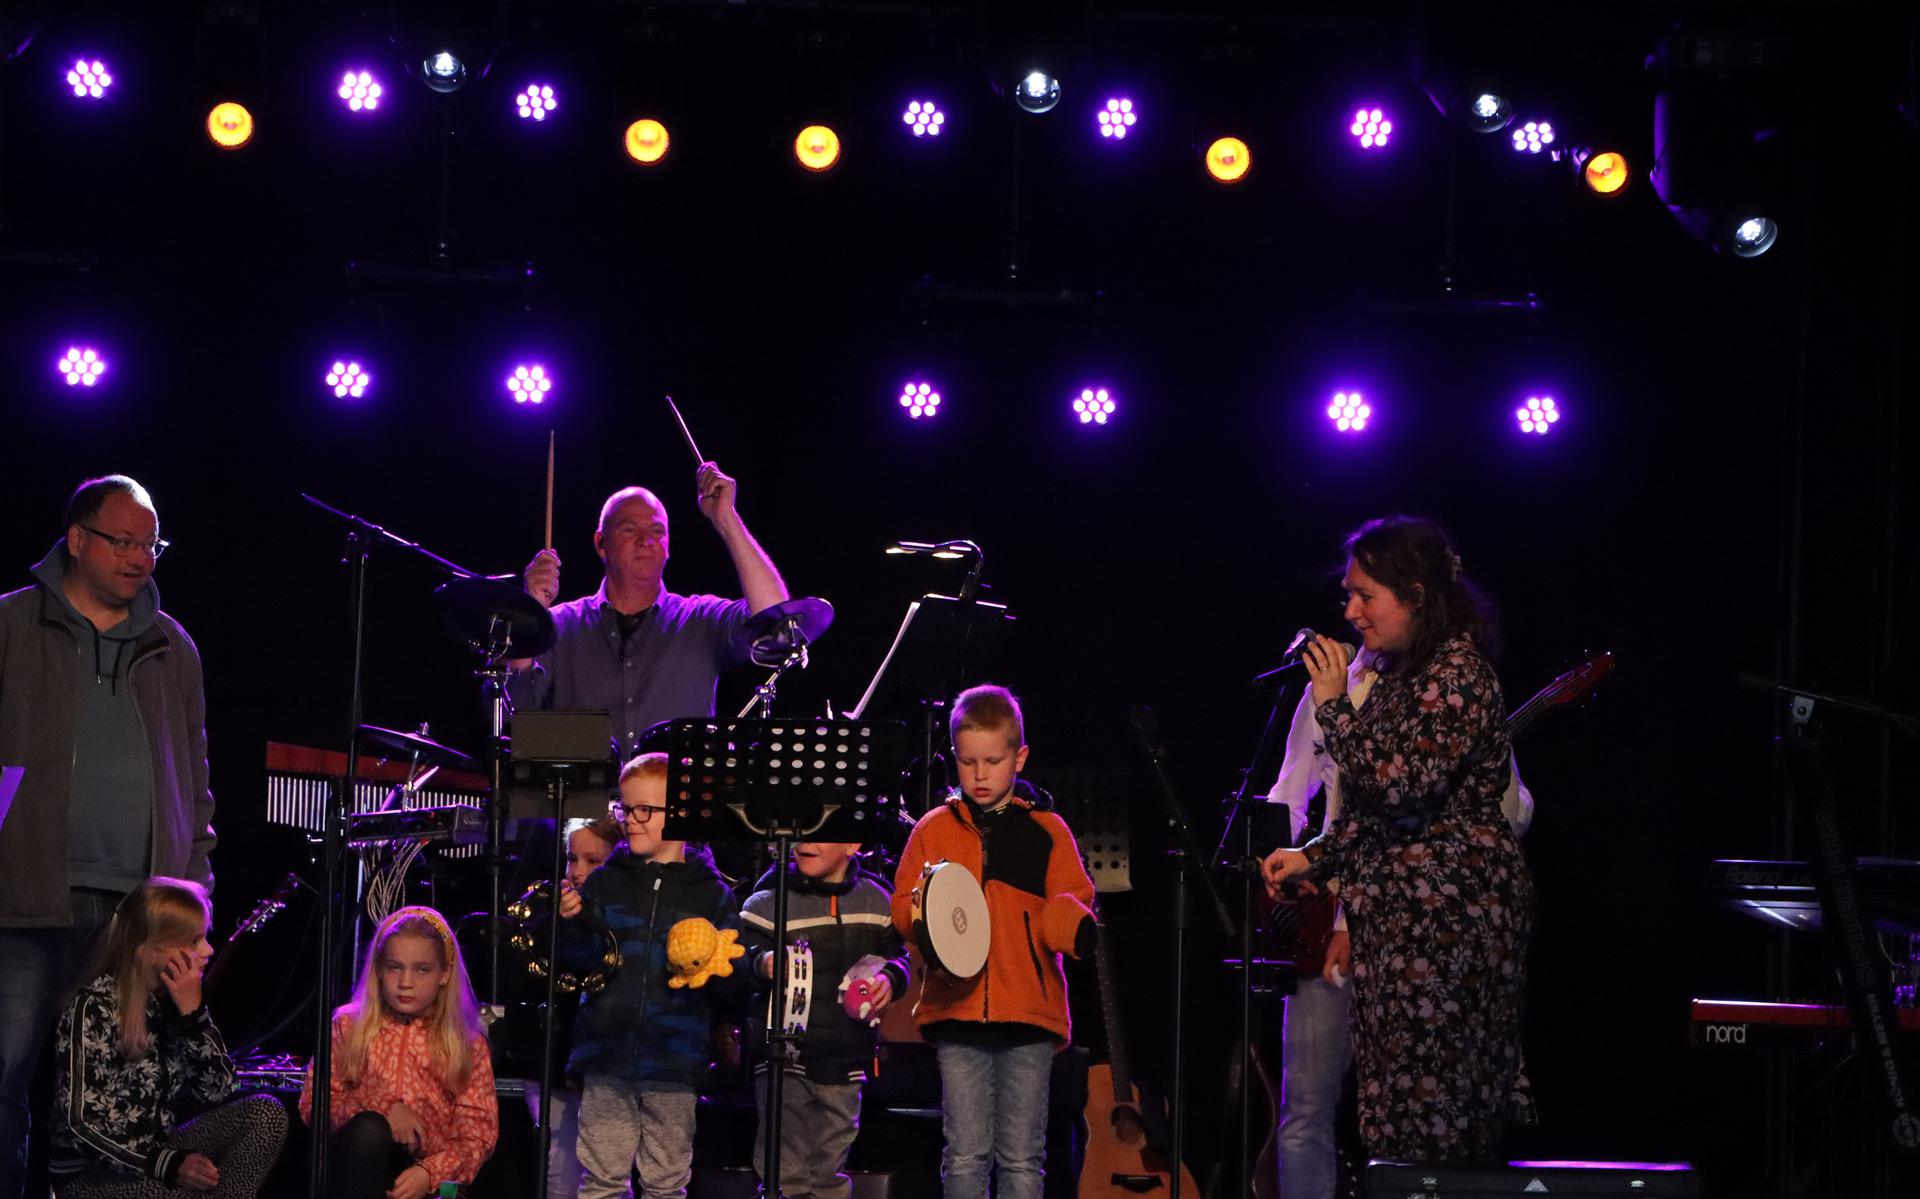 De gospelband Sjem uit Kollum trad in het Groningse voor de eerste keer in de nieuwe formatie op.